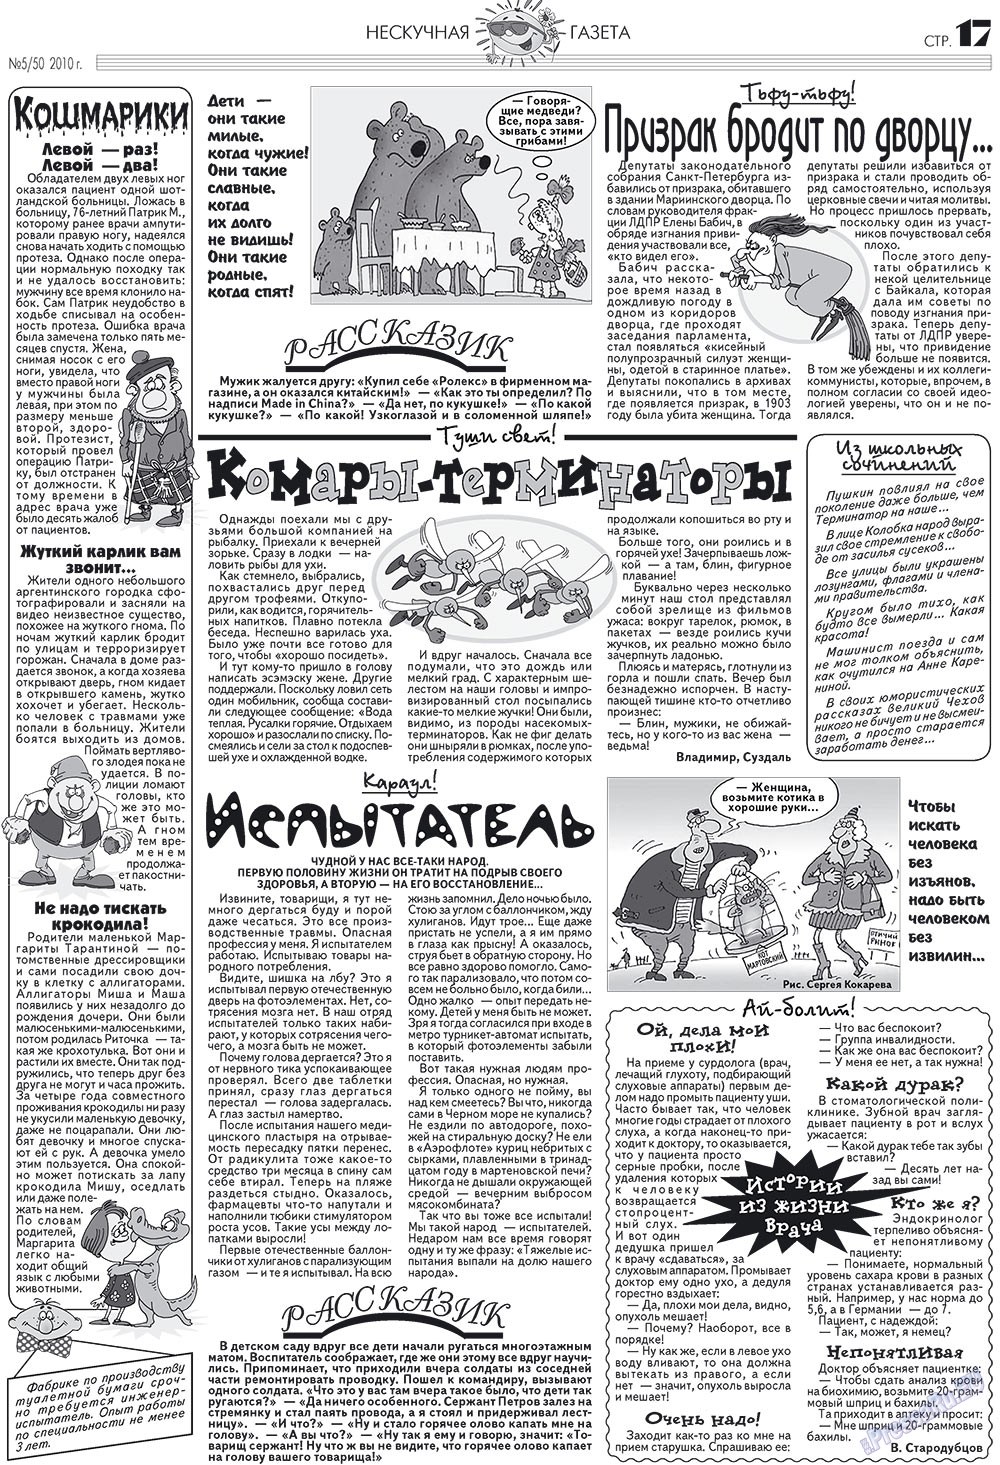 Нескучная газета (журнал). 2010 год, номер 5, стр. 16